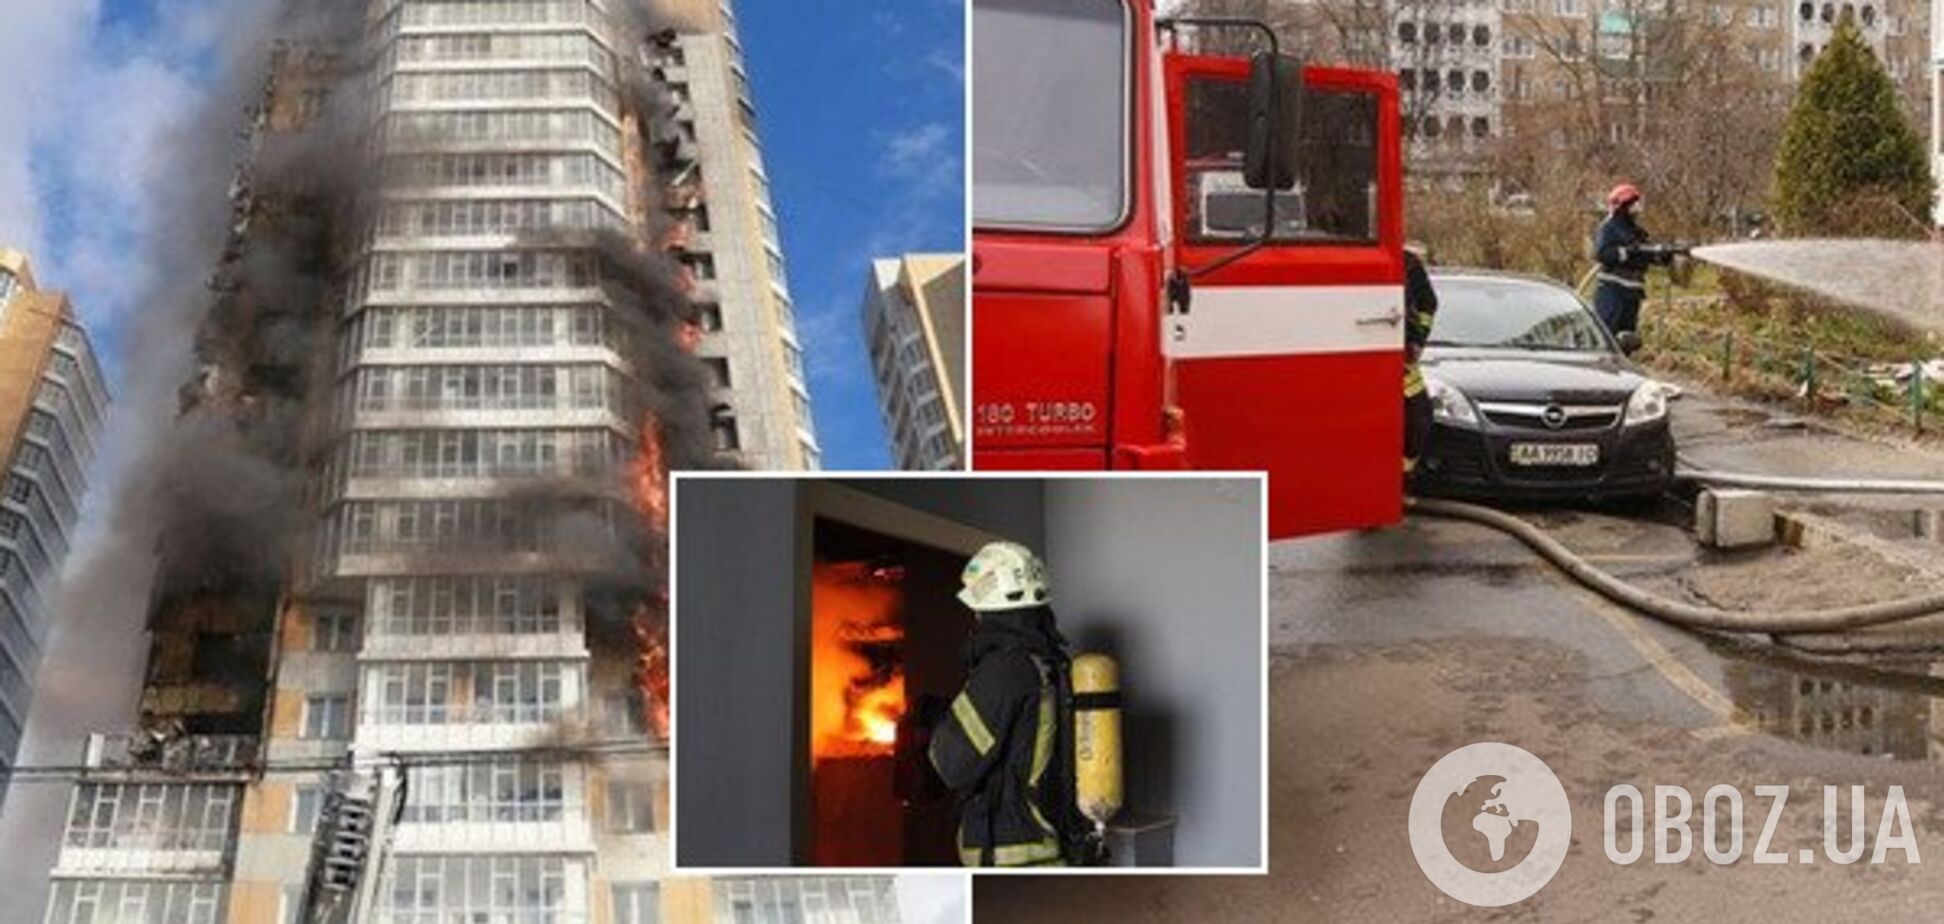 'Ситуація драматична': українці ризикують опинитися у вогняній пастці